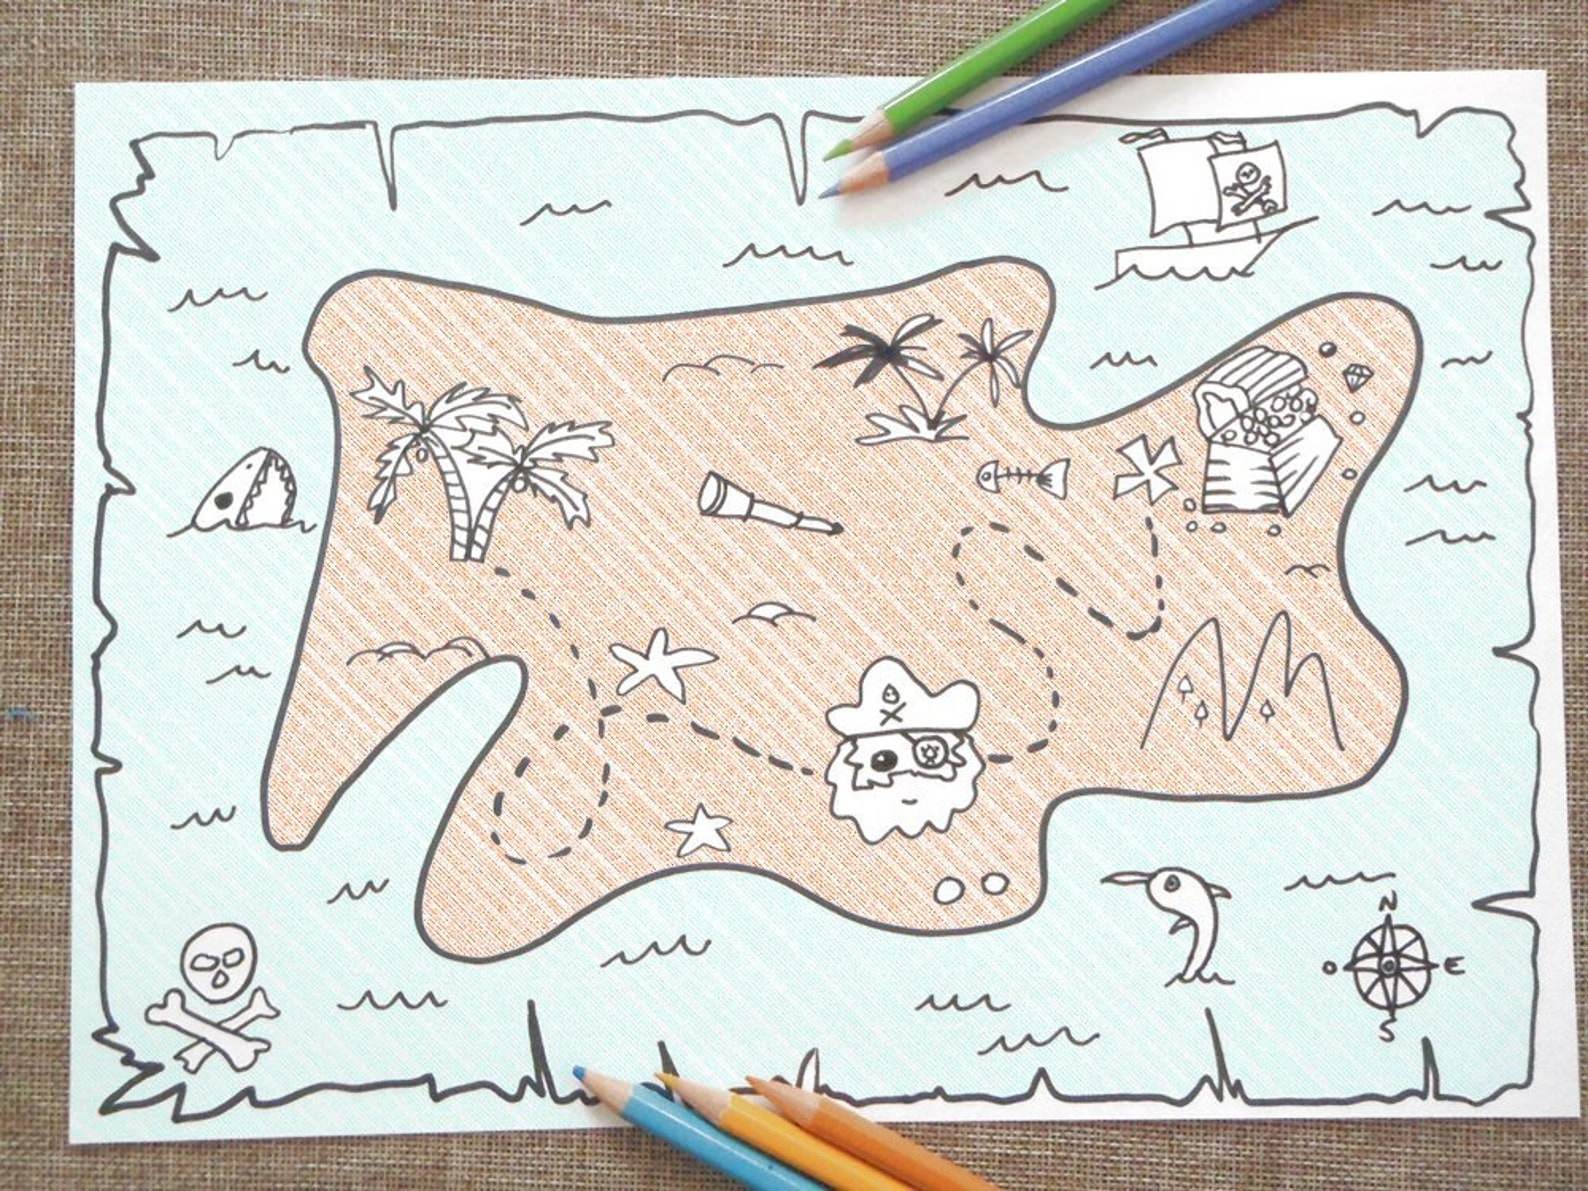 Картинки карты нарисовал. Карта сокровищ для детей. Пиратская карта для детей. Карта клада для детей. Карта нарисованная.